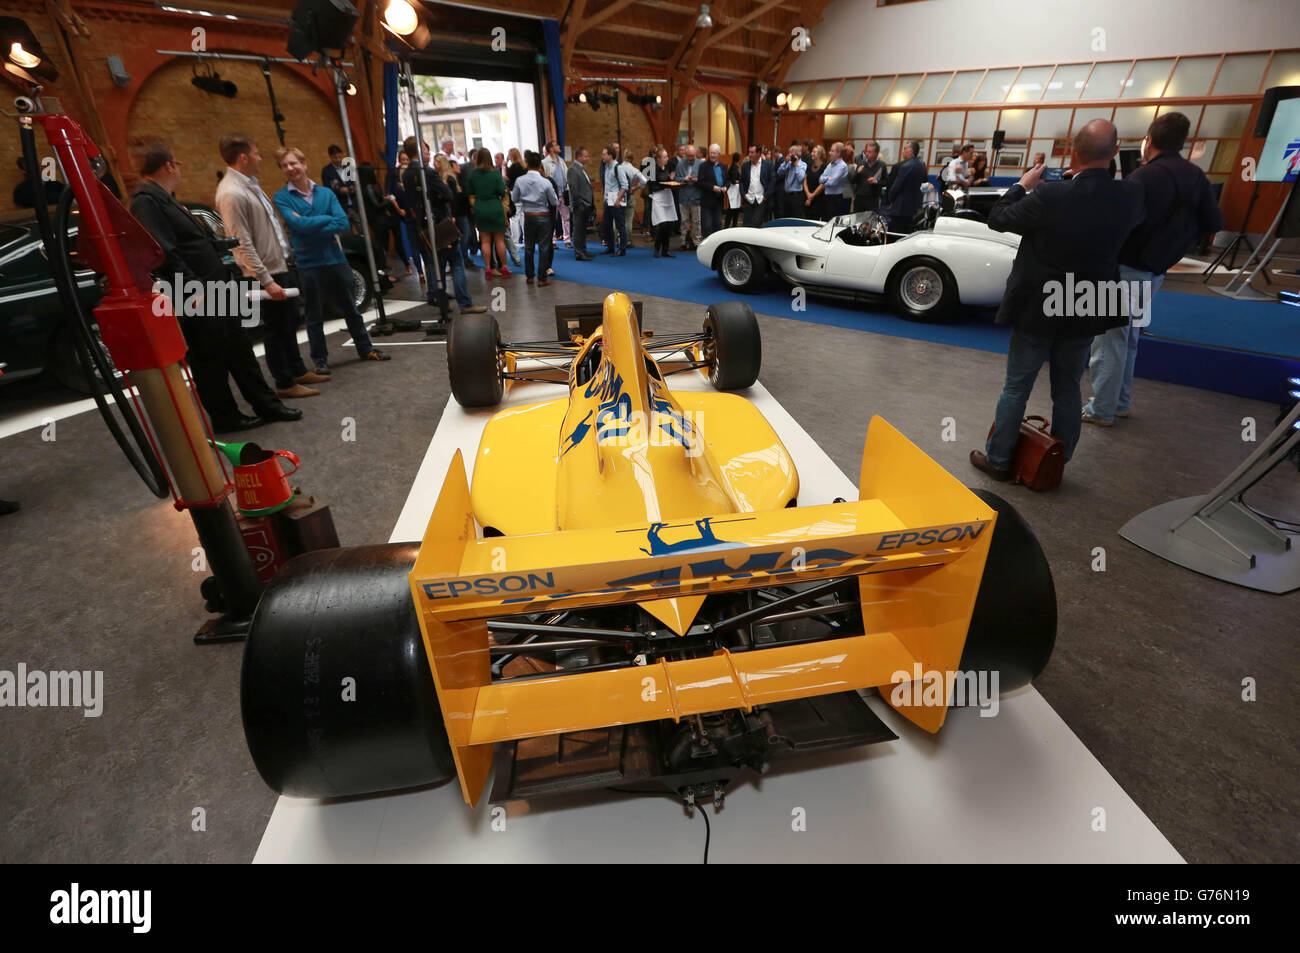 Ein Lotus F1-Auto aus dem Jahr 1989, das während der Eröffnung der London Classic Car Show, die vom 8. Bis 11. Januar 2015 in Kensington, London, in Excel stattfinden wird, ausgestellt wird. Stockfoto